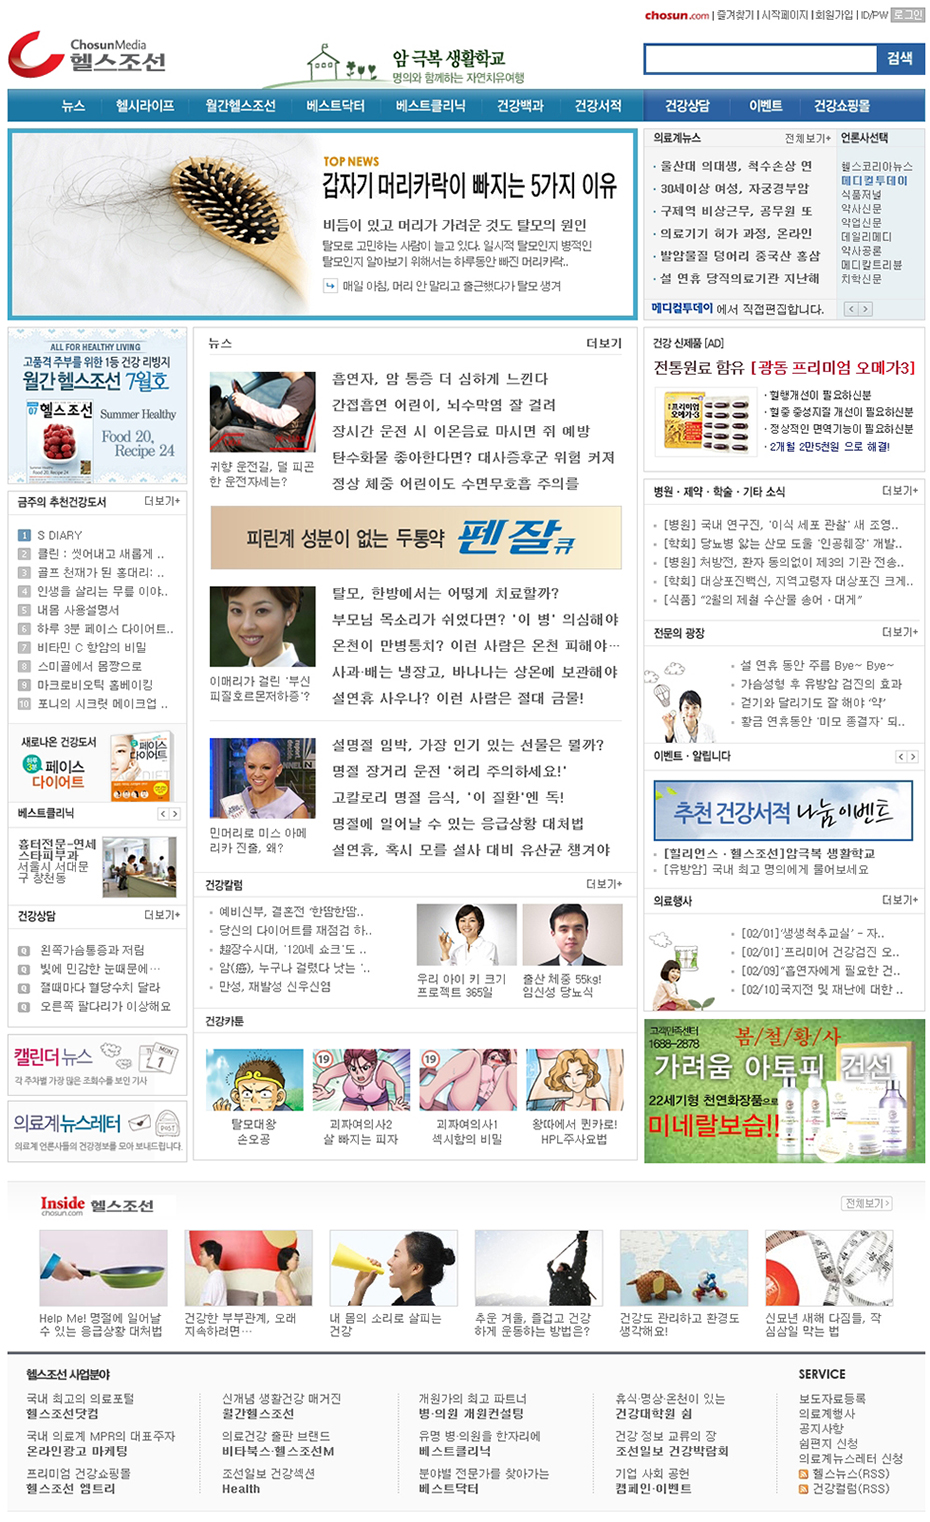 2011년 헬스조선닷컴 